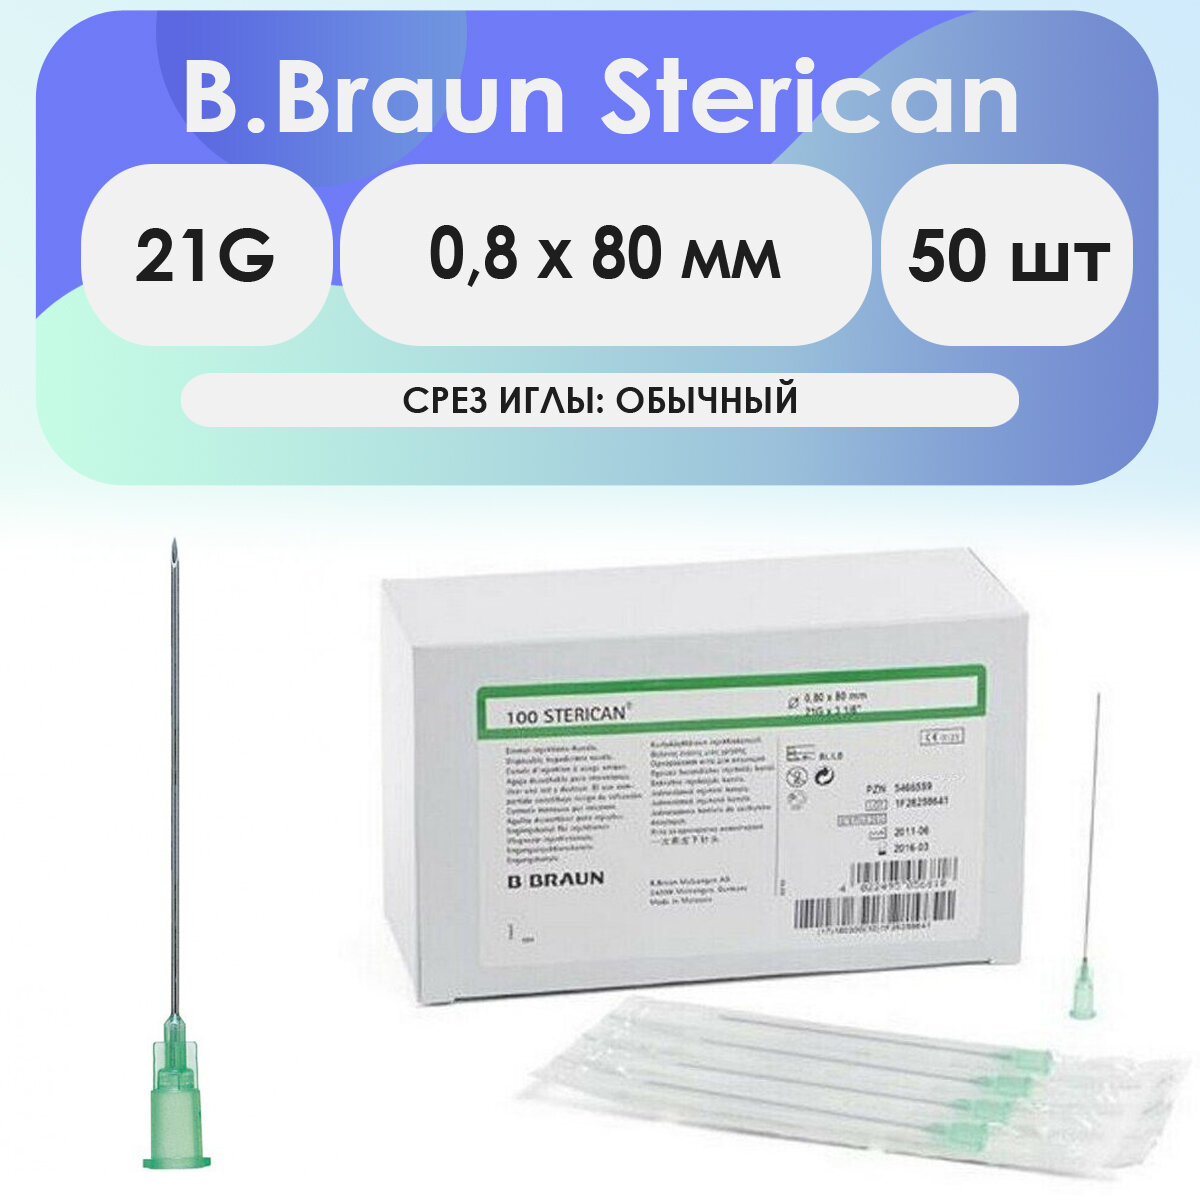 Игла инъекционная B. Braun Sterican 21G (0,8 х 80) - 50 шт